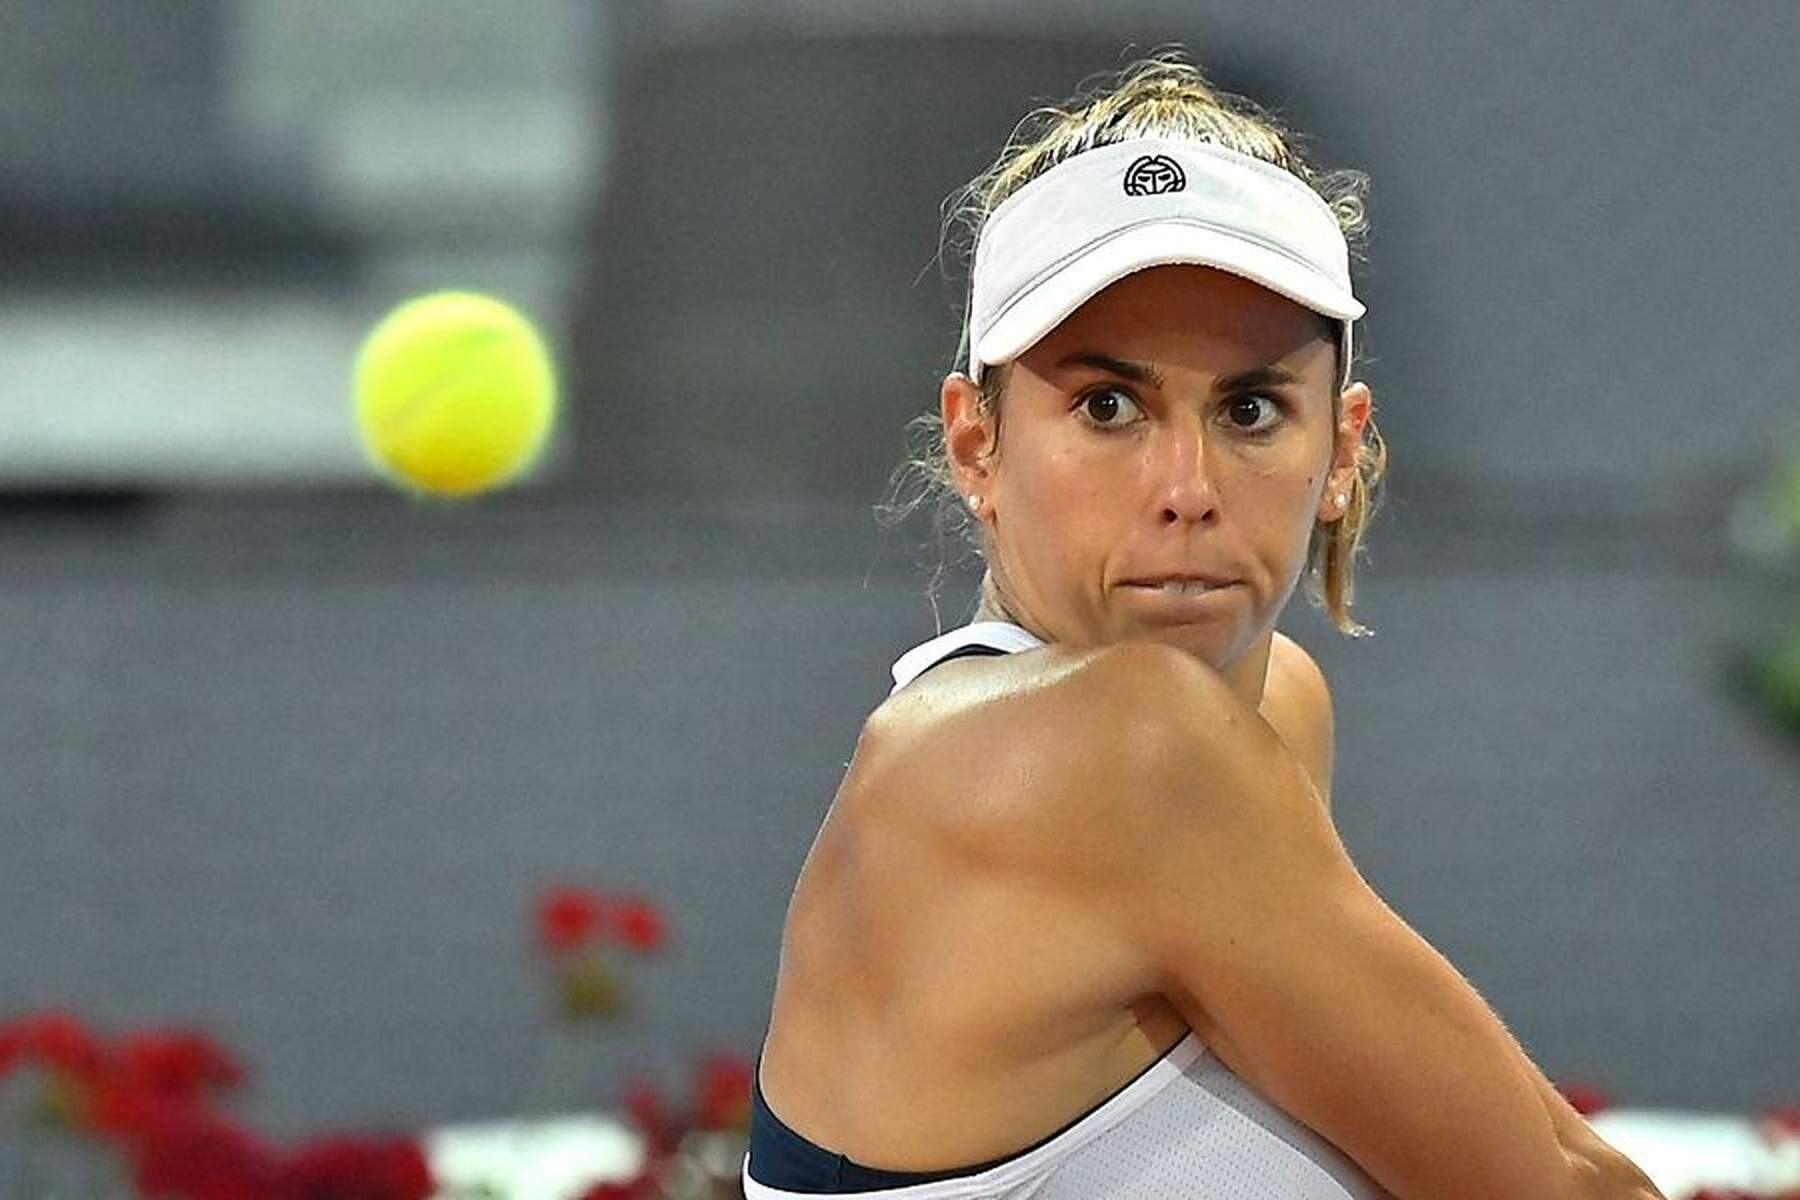 Morocco Open in Rabat Julia Grabher profitiert von Aufgabe und steht erstmals in WTA-Halbfinale